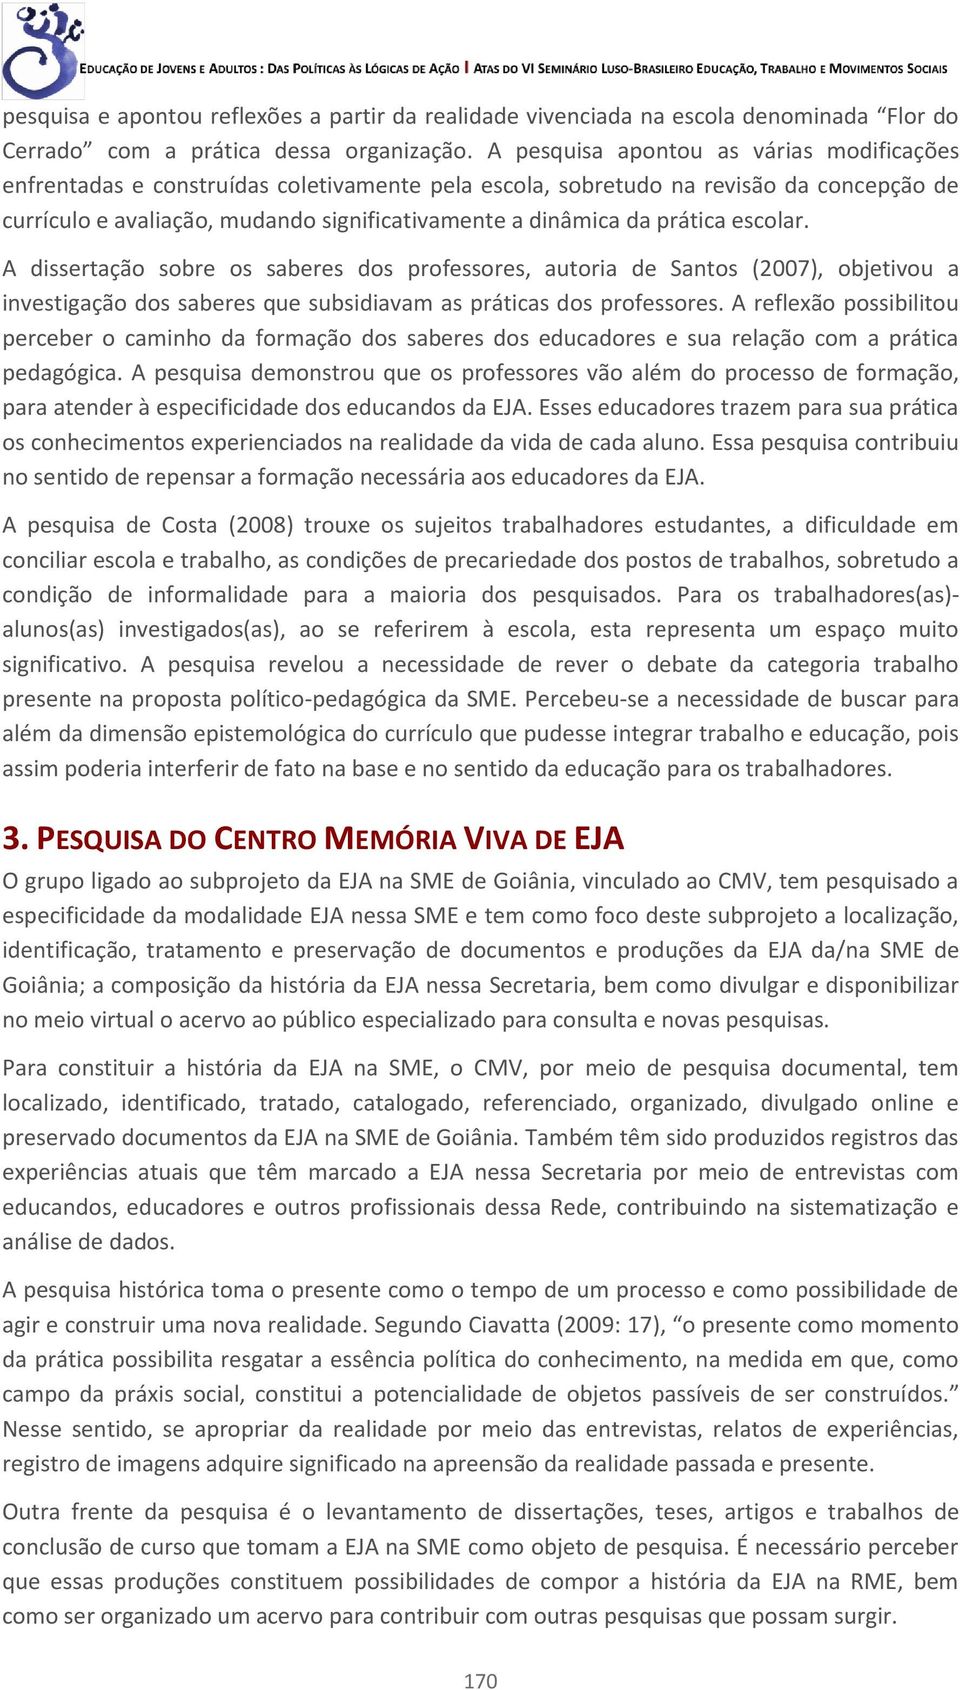 prática escolar. A dissertação sobre os saberes dos professores, autoria de Santos (2007), objetivou a investigação dos saberes que subsidiavam as práticas dos professores.